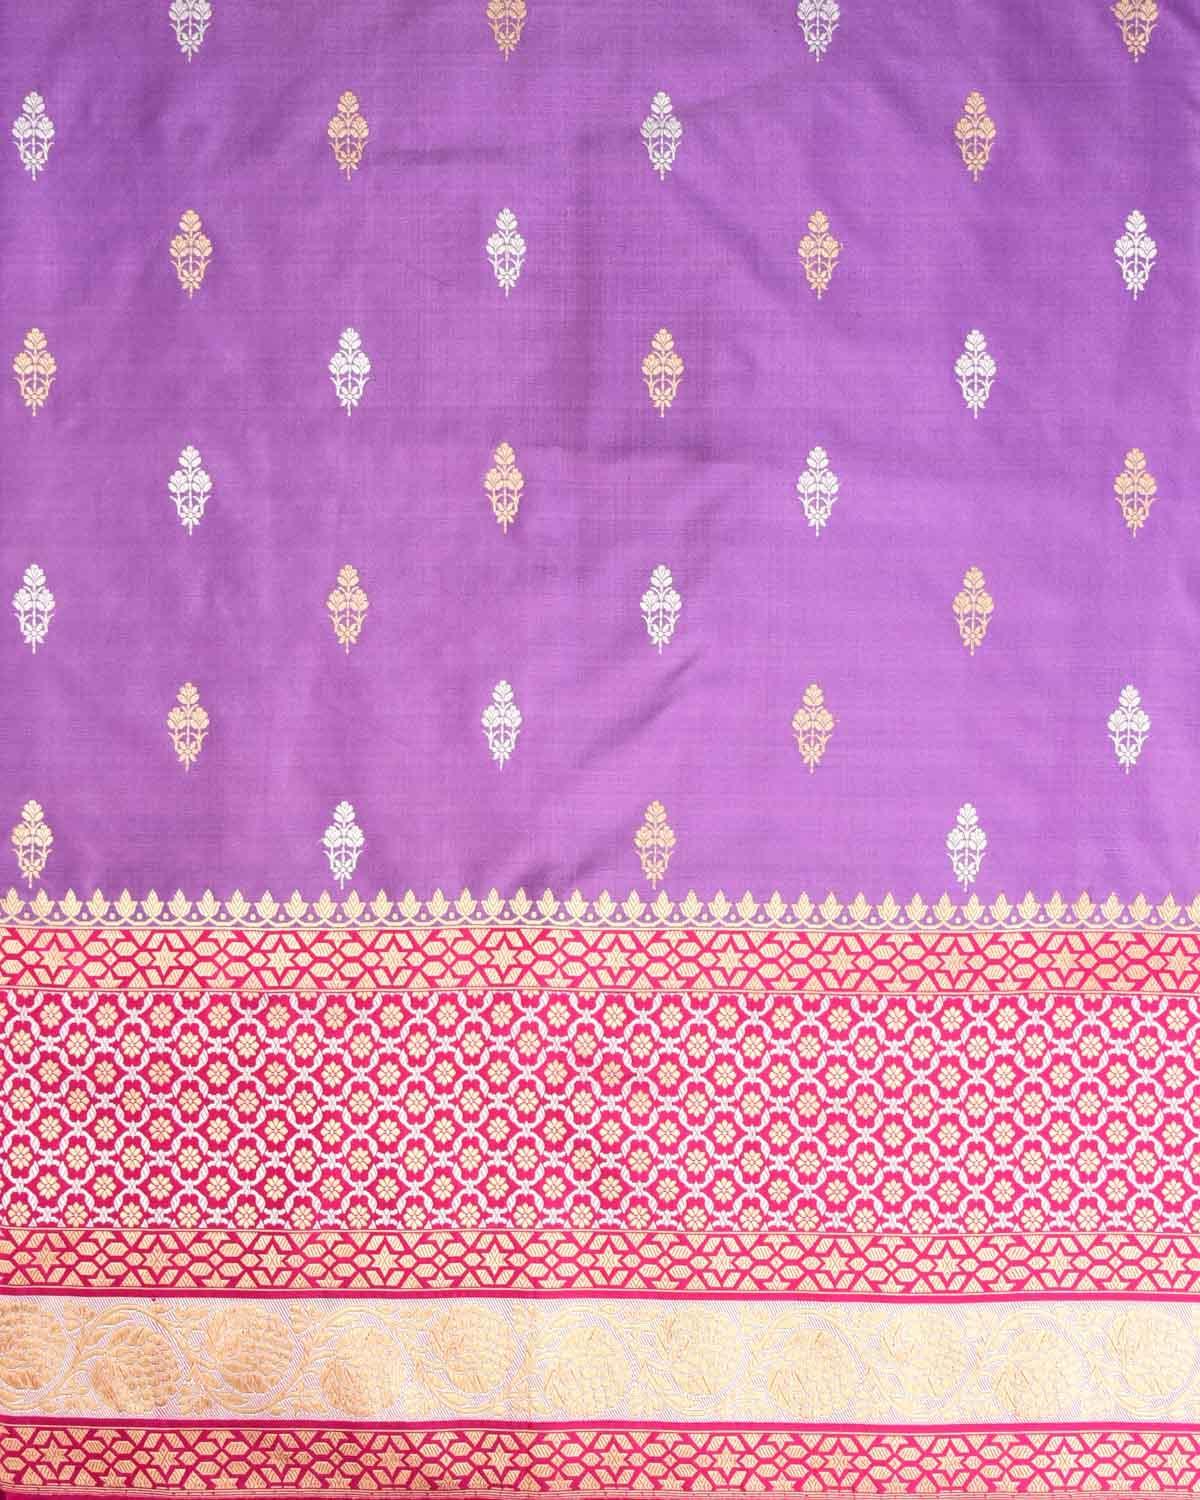 Mauve Banarasi Gold & Silver Zari Buti Kadhuan Brocade Handwoven Katan Silk Saree with Contrast Pink Border Pallu - By HolyWeaves, Benares